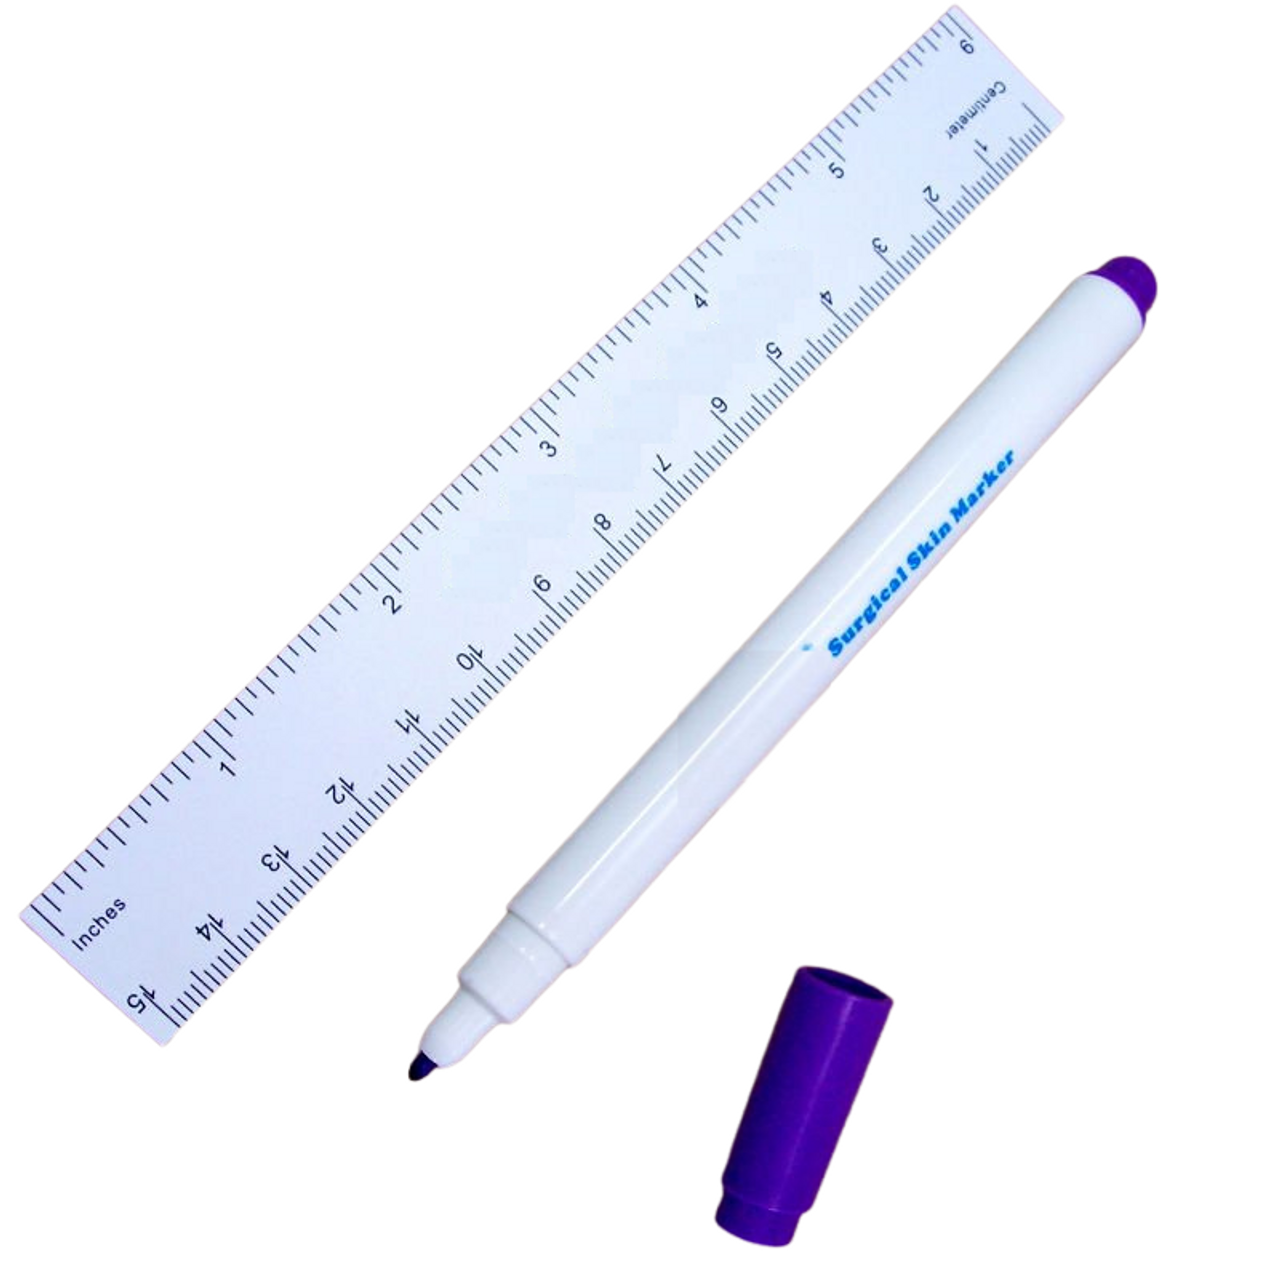 Skin marker & ruler, sterile, 36 pcs - Suture Online